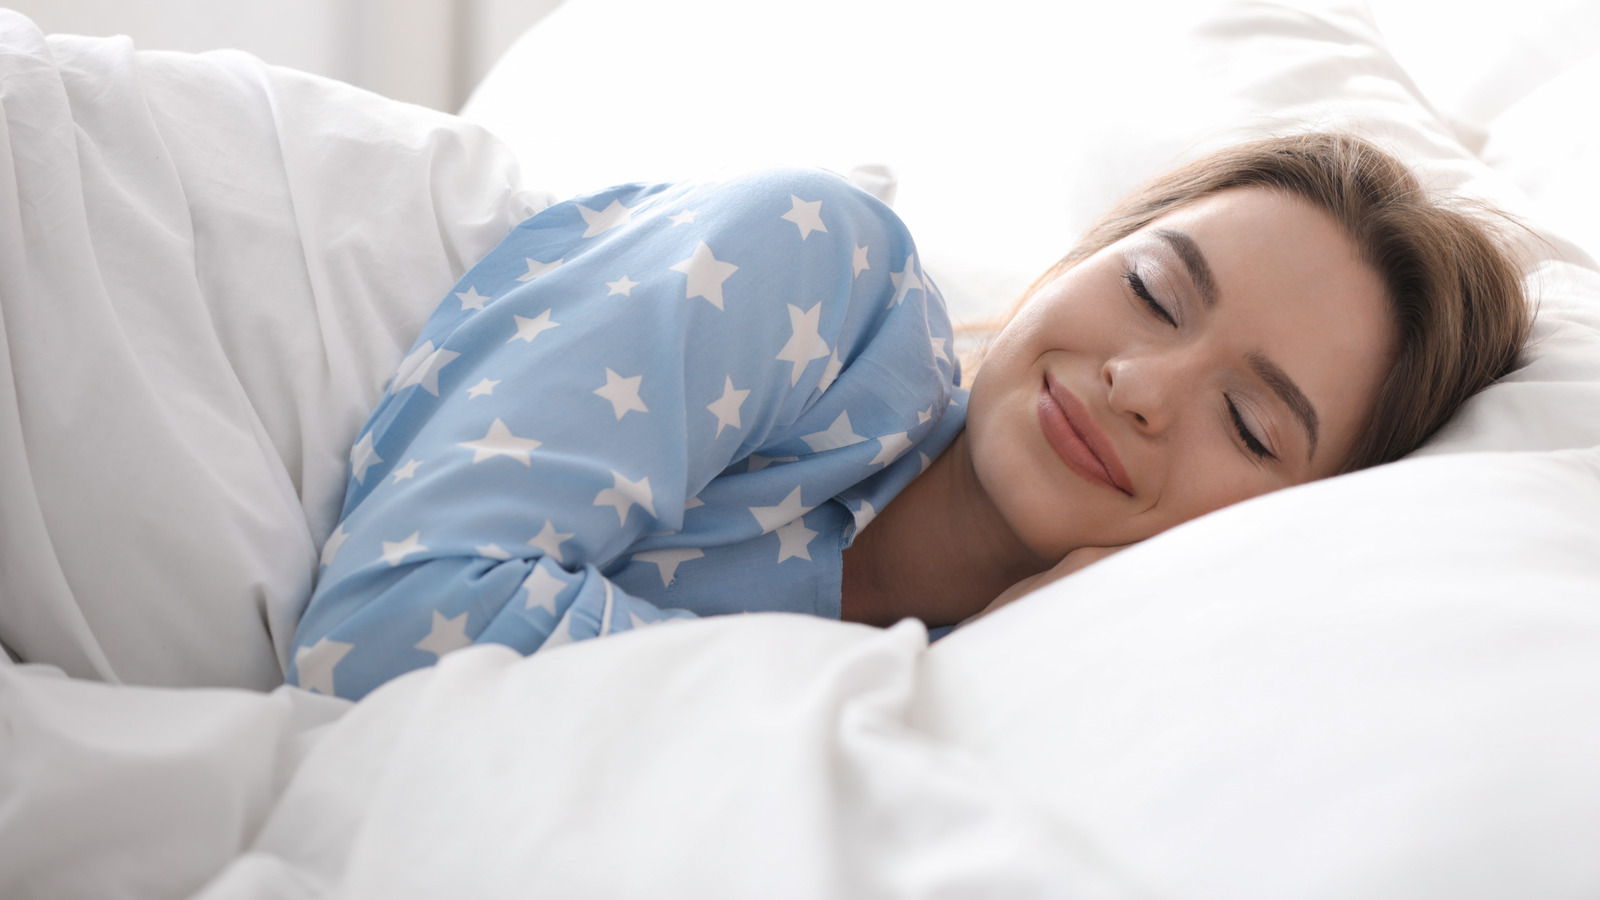 These basic tips can reduce your sleep apnea